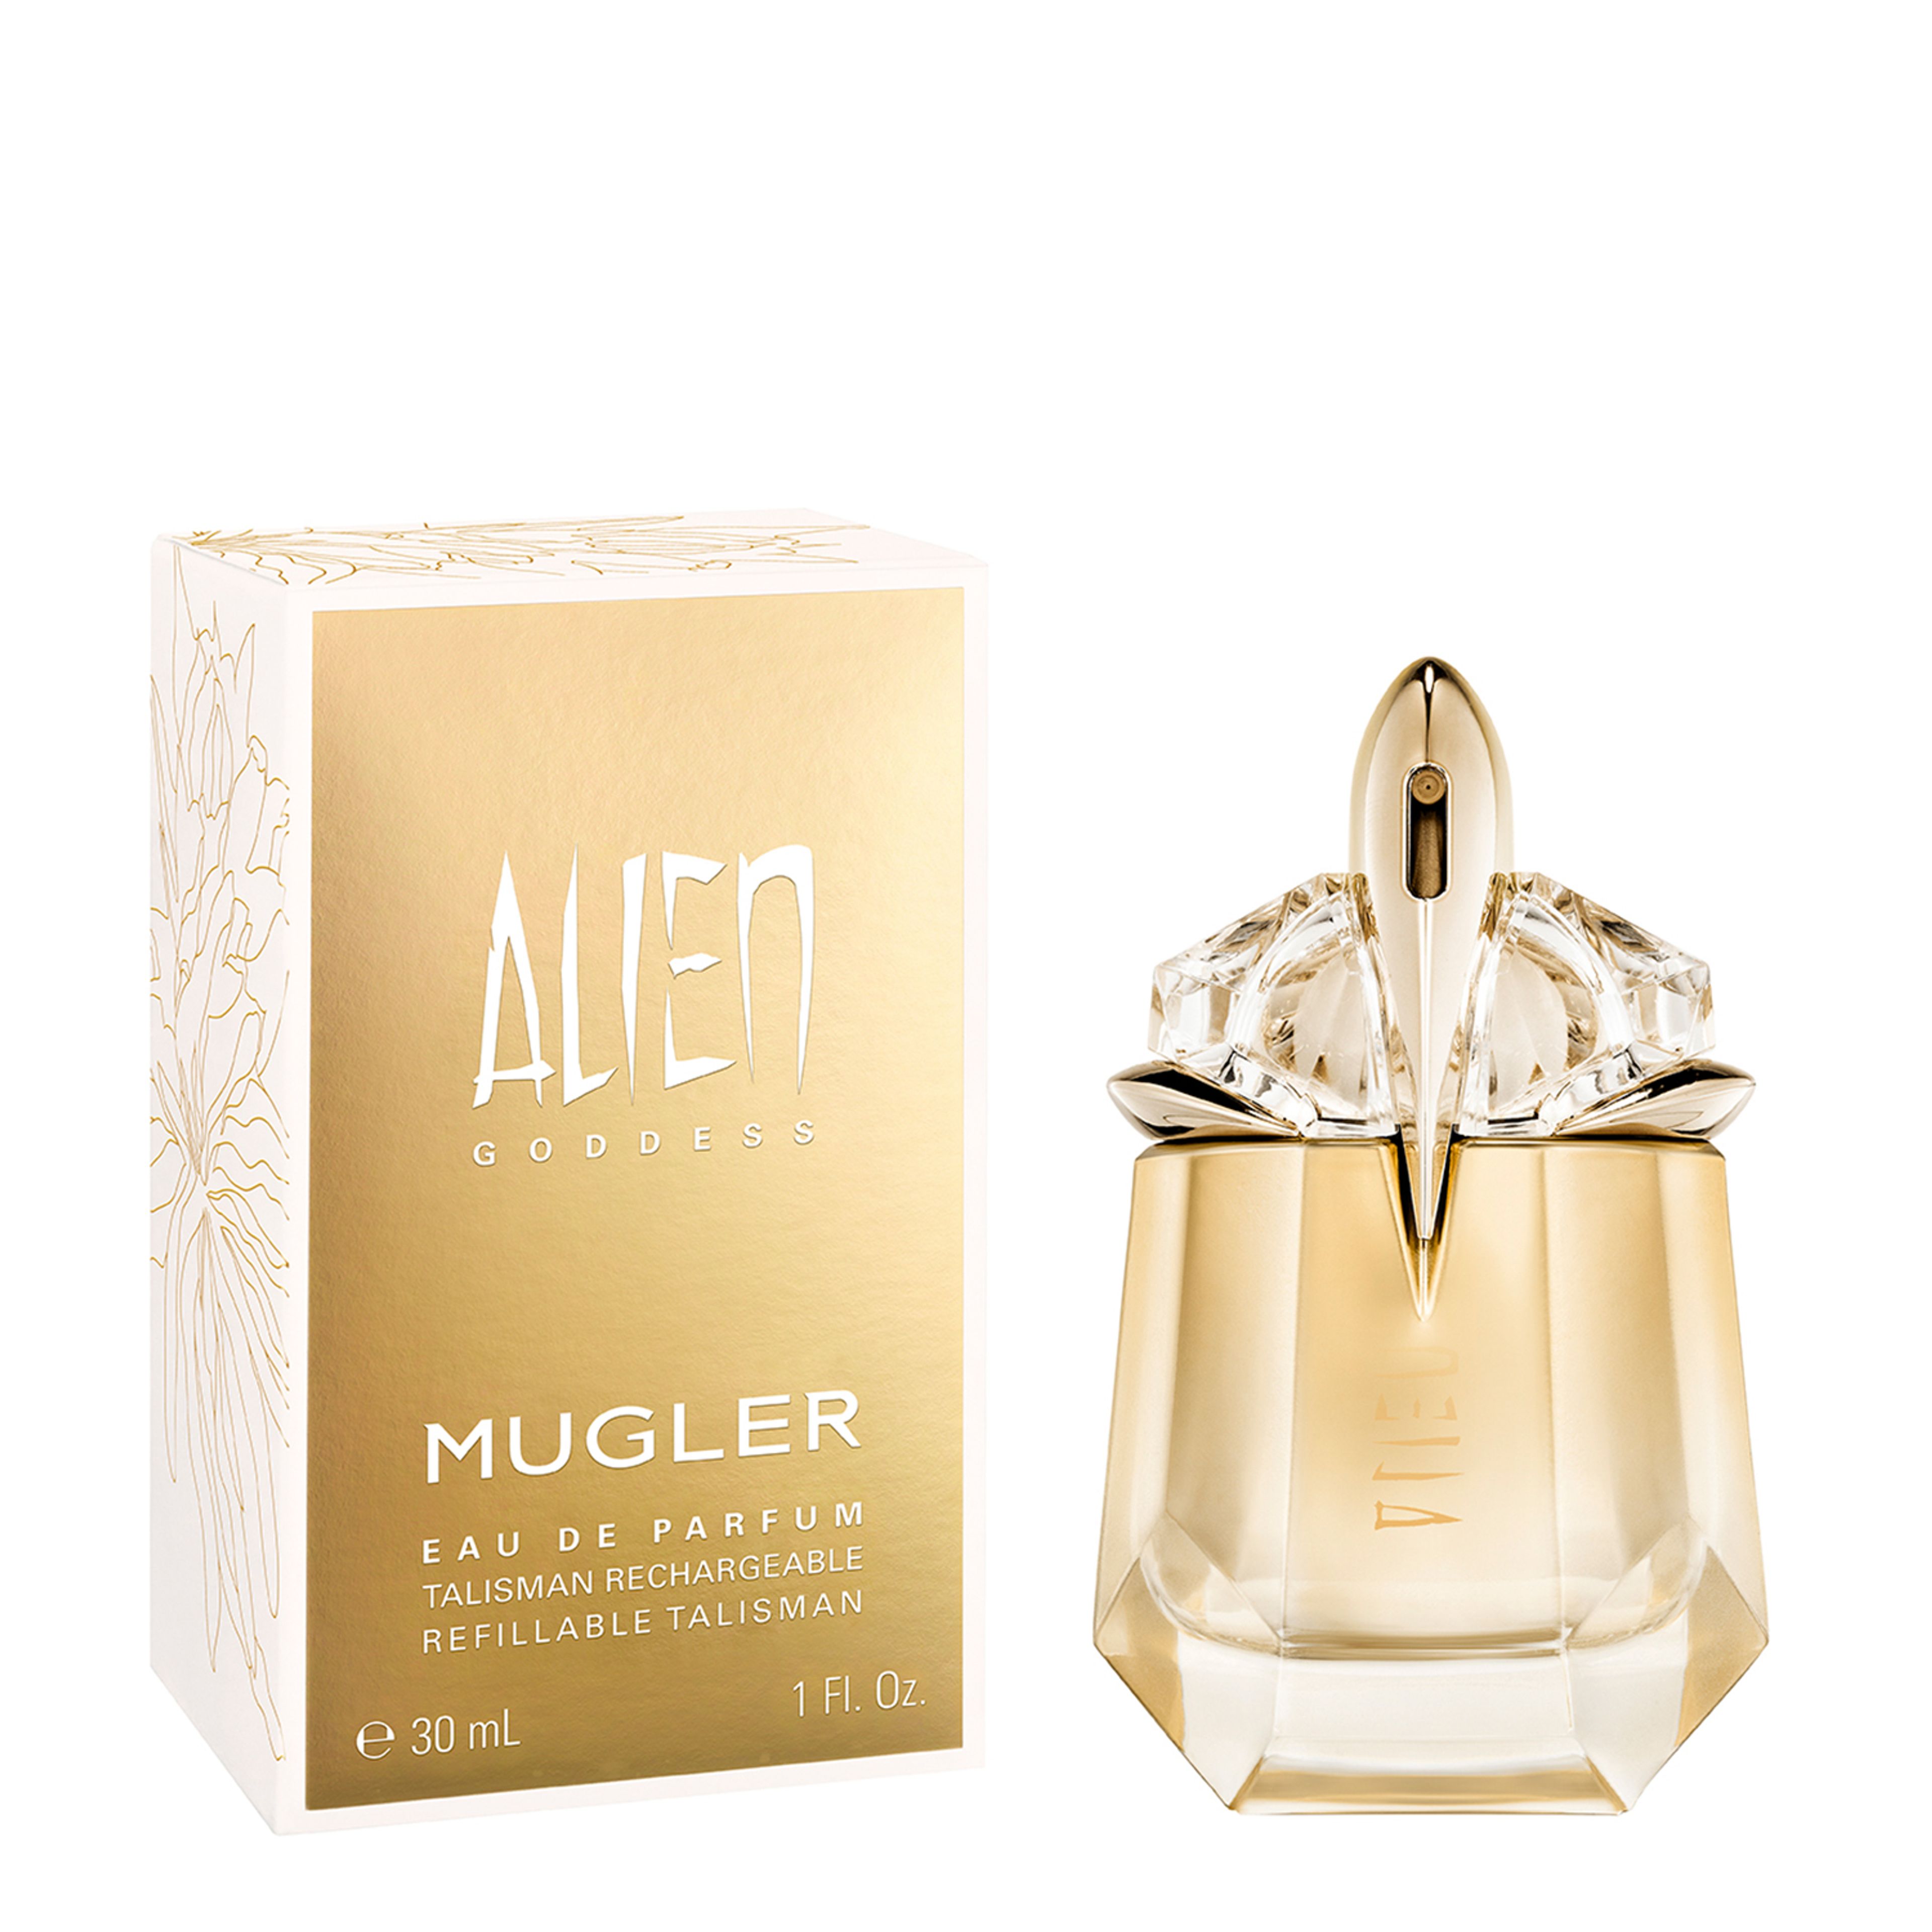 Mugler Alien Goddess Eau De Parfum 2